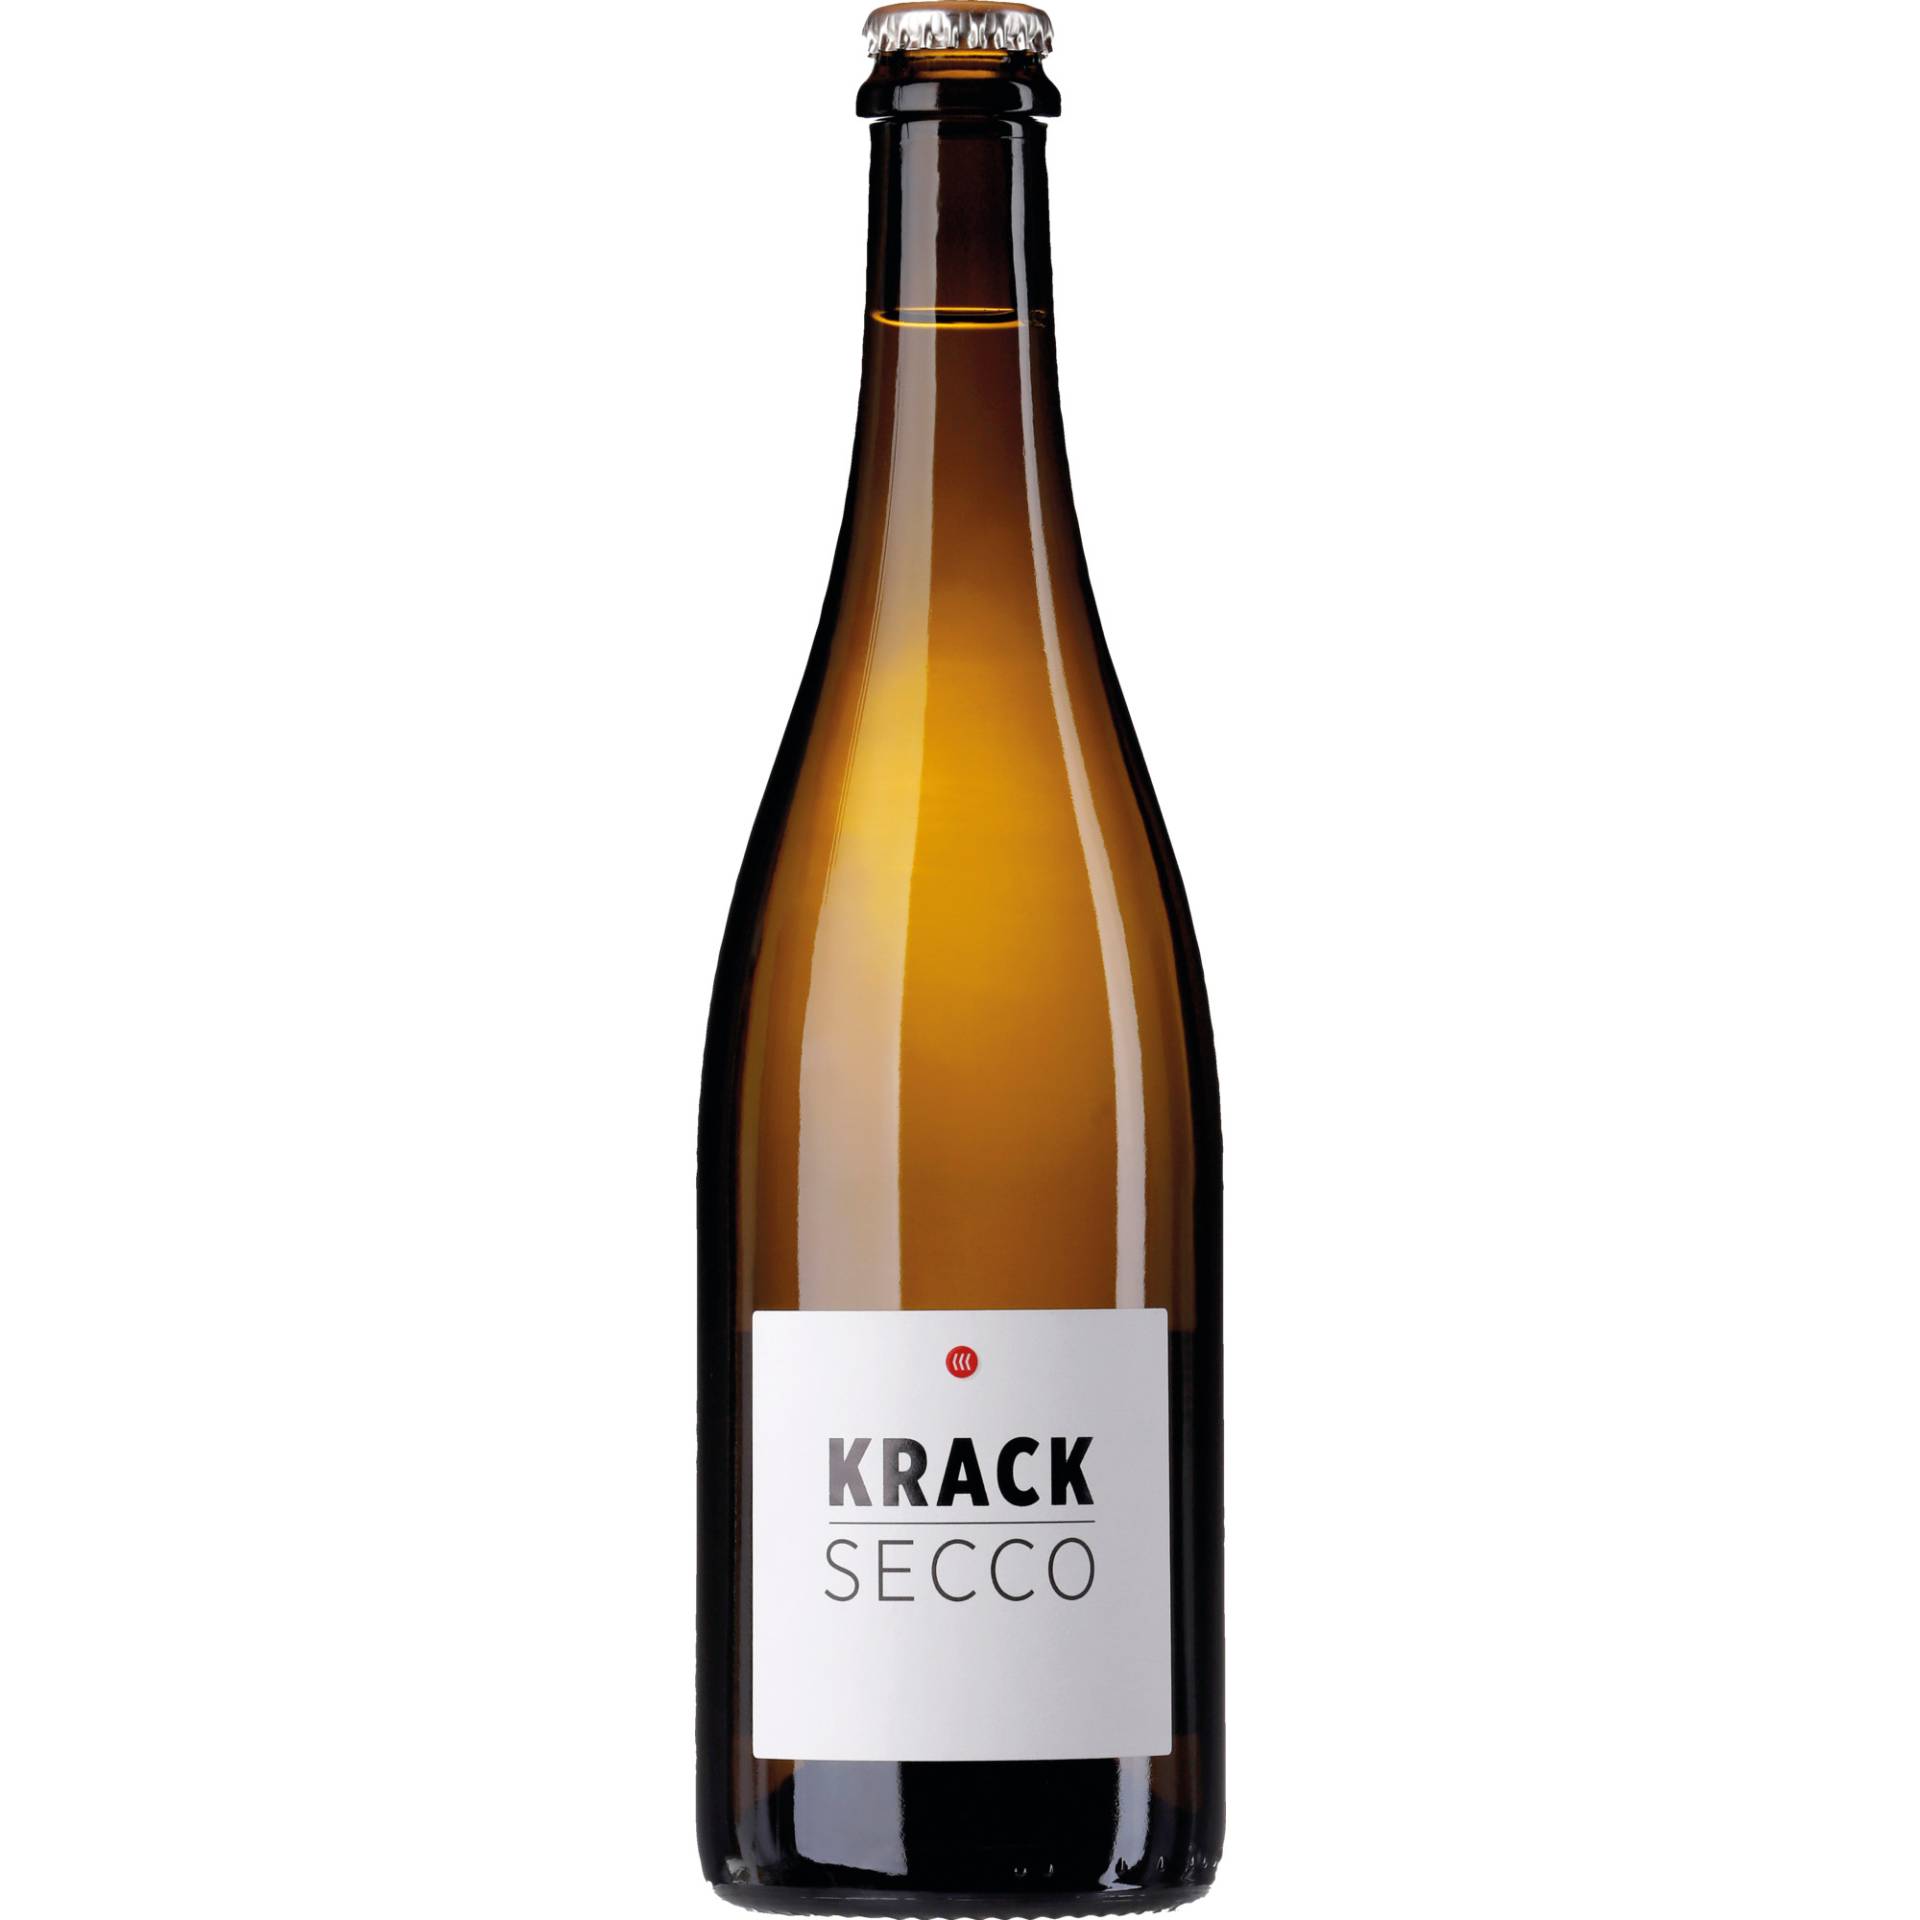 Krack Secco Weiss, Deutscher Perlwein mit zugesetzter Kohlensäure, Deutscher Tafelwein, Perlwein / Secco von Sekthaus Krack, D - 67146 Deidesheim